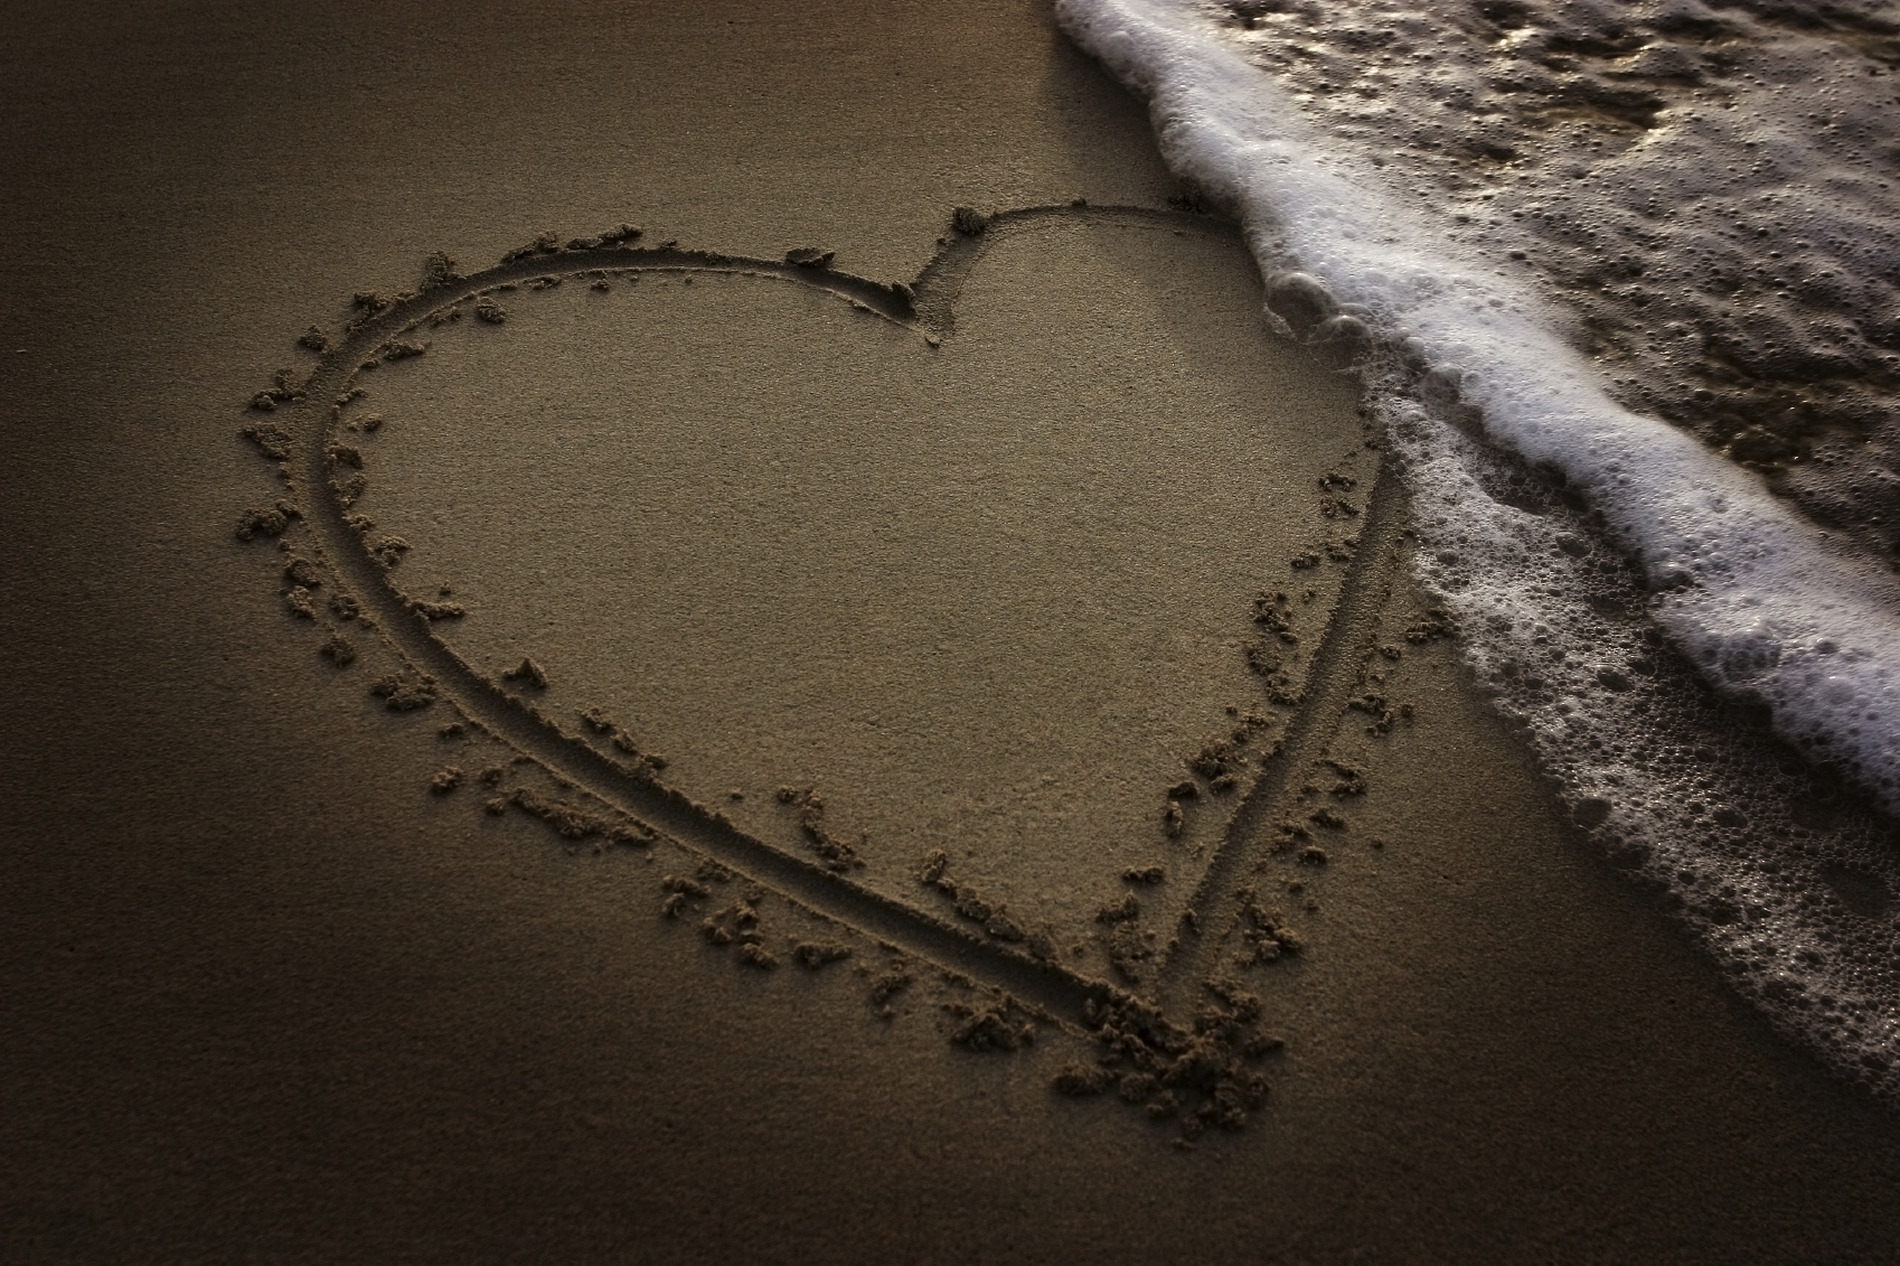 heart, bank, water, sand, love, shore, foam